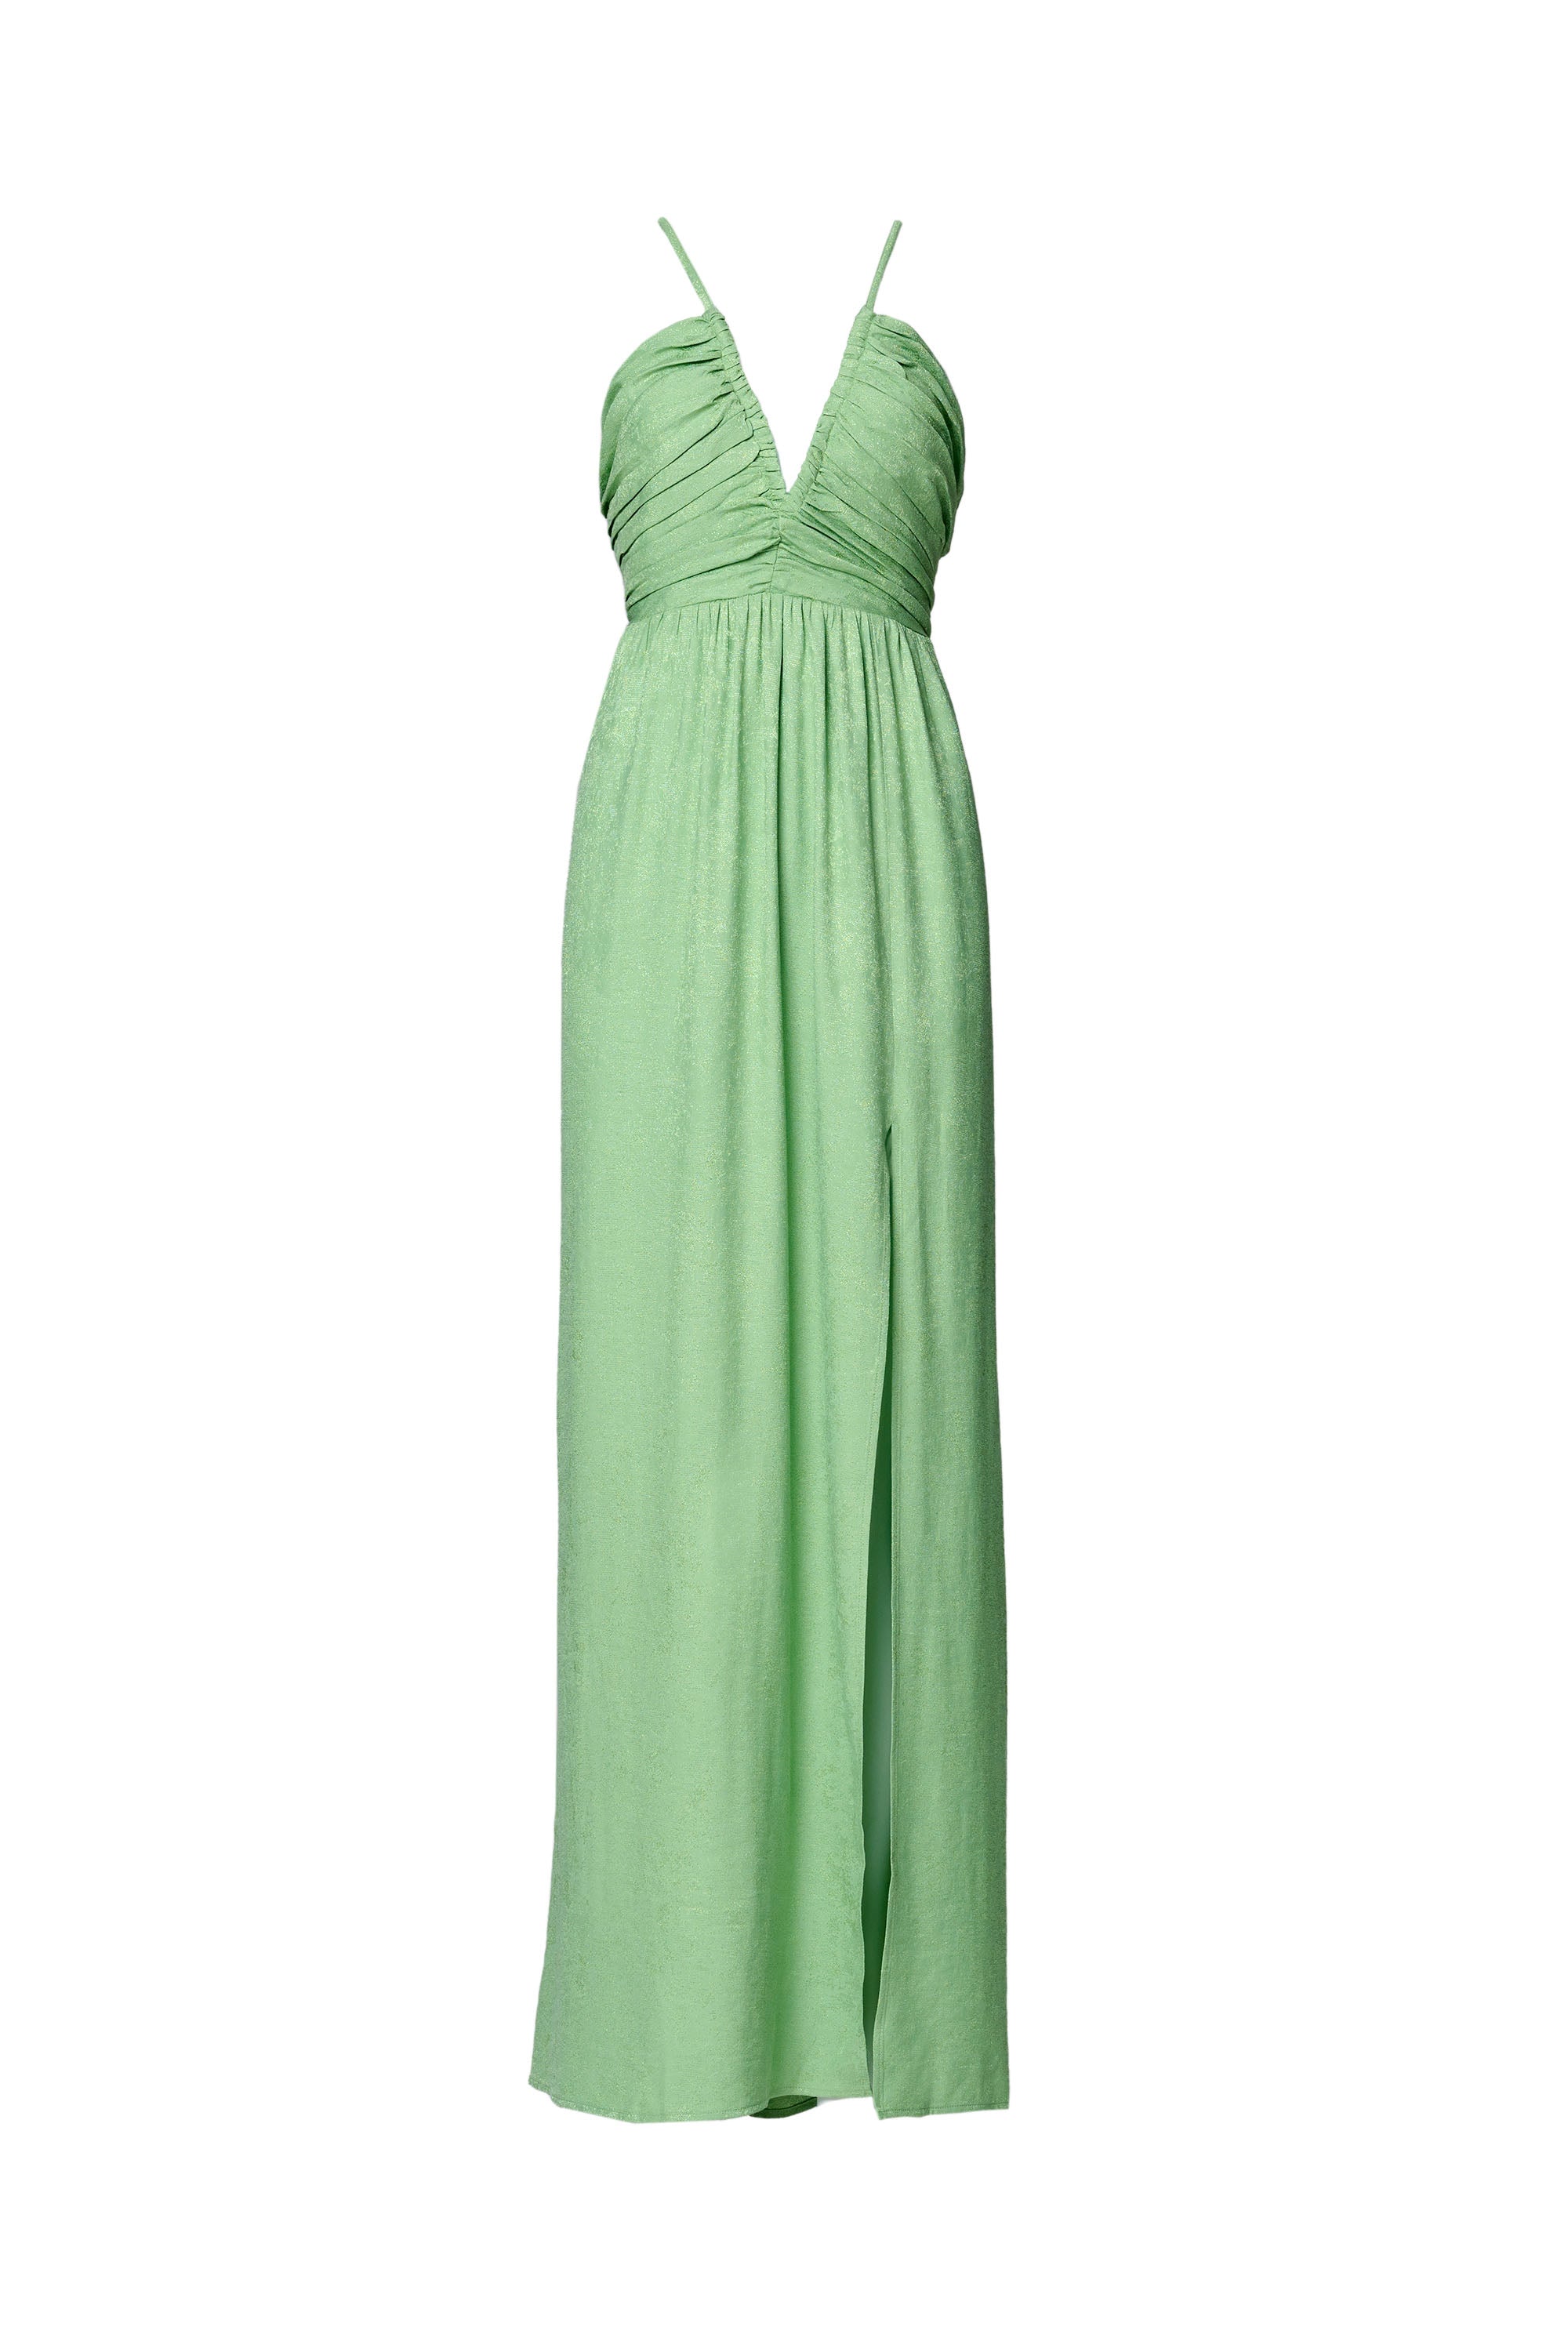 in – – dress Shop Summer green Dress Maxi